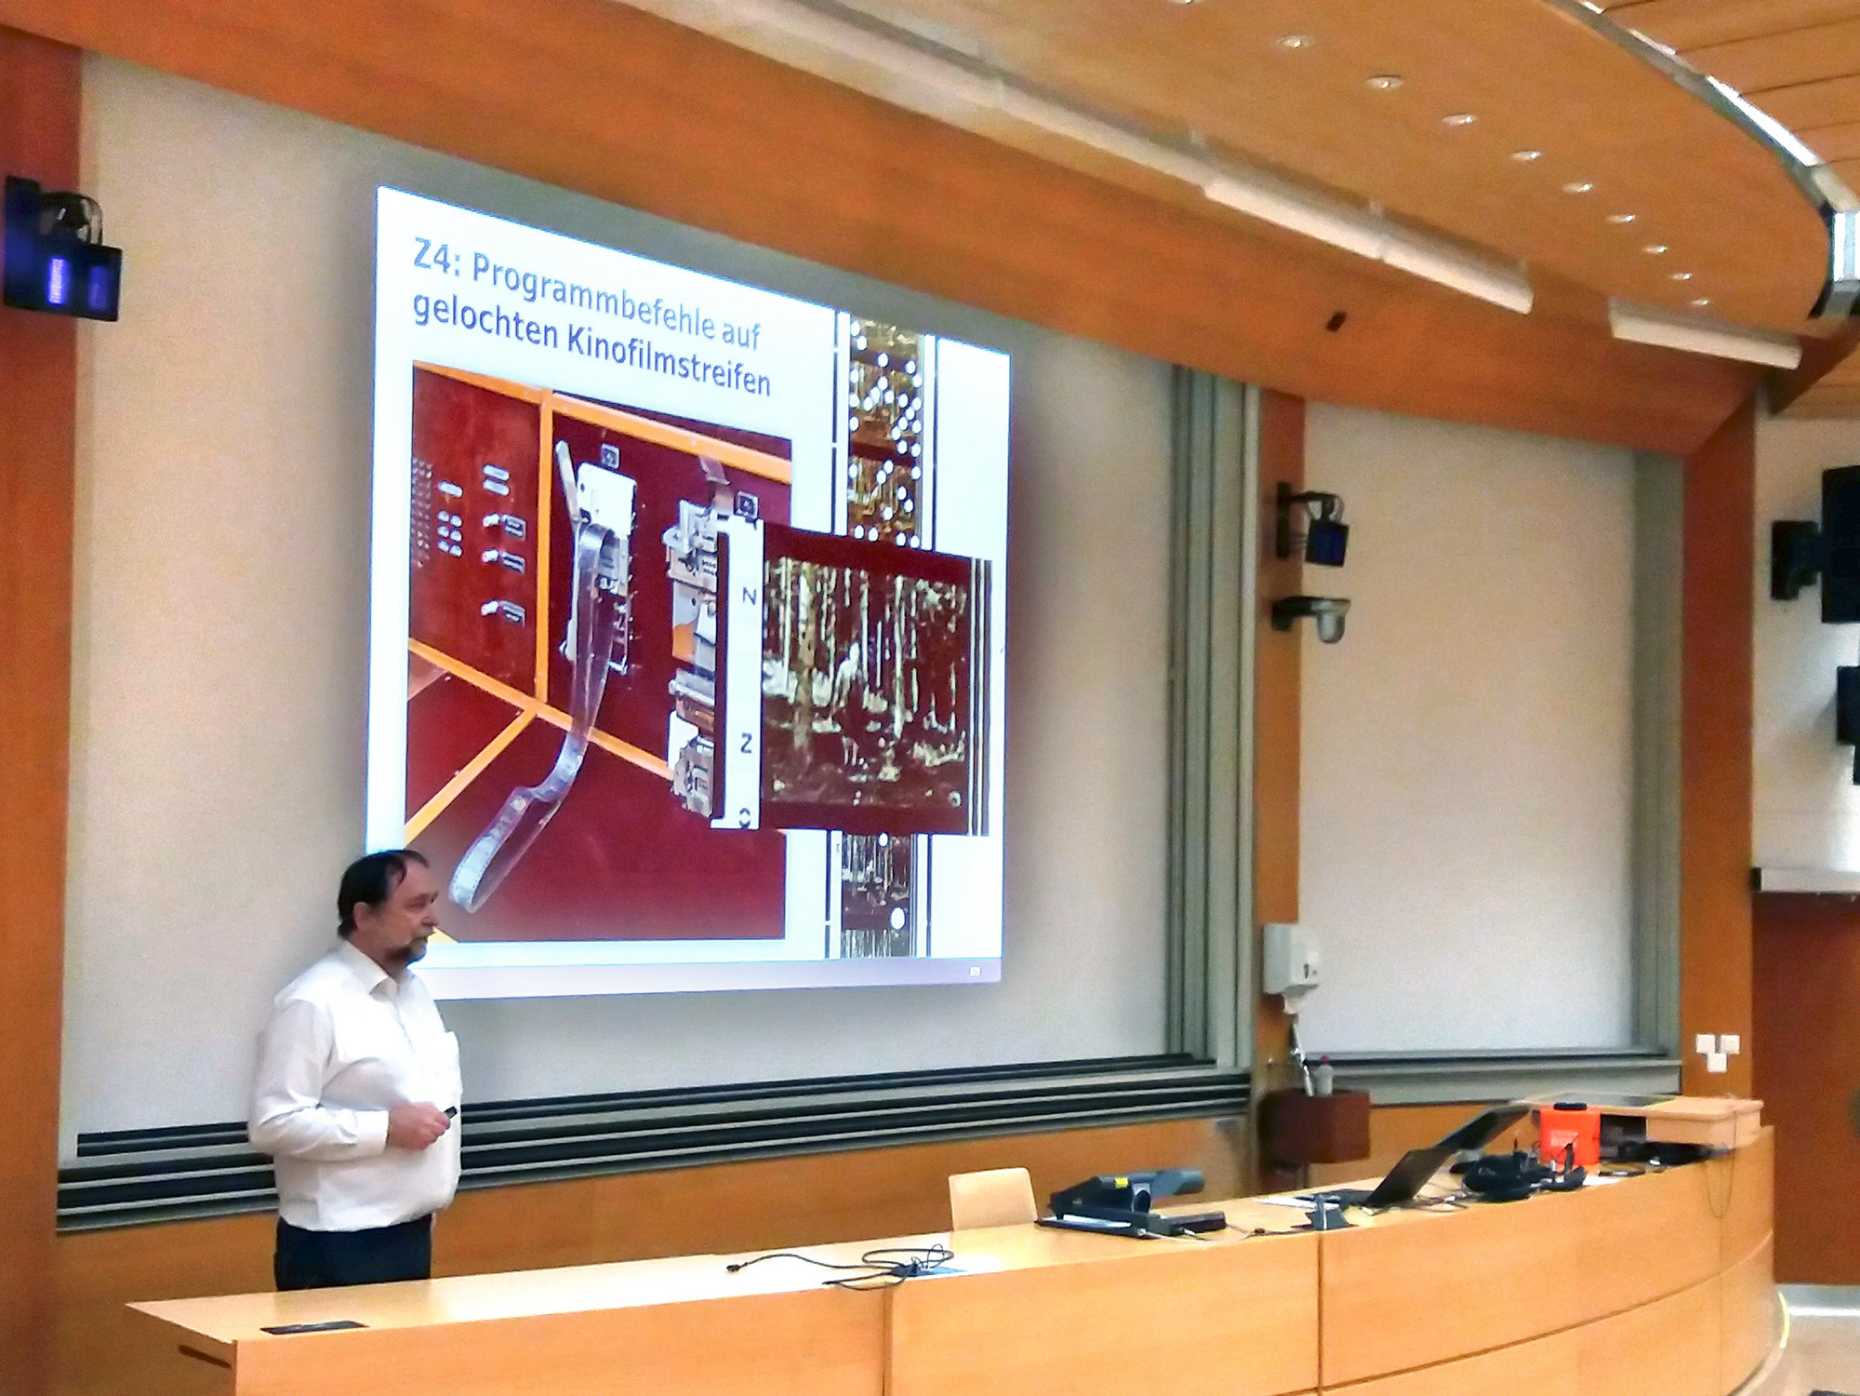 Friedemann Mattern teaches a lecture